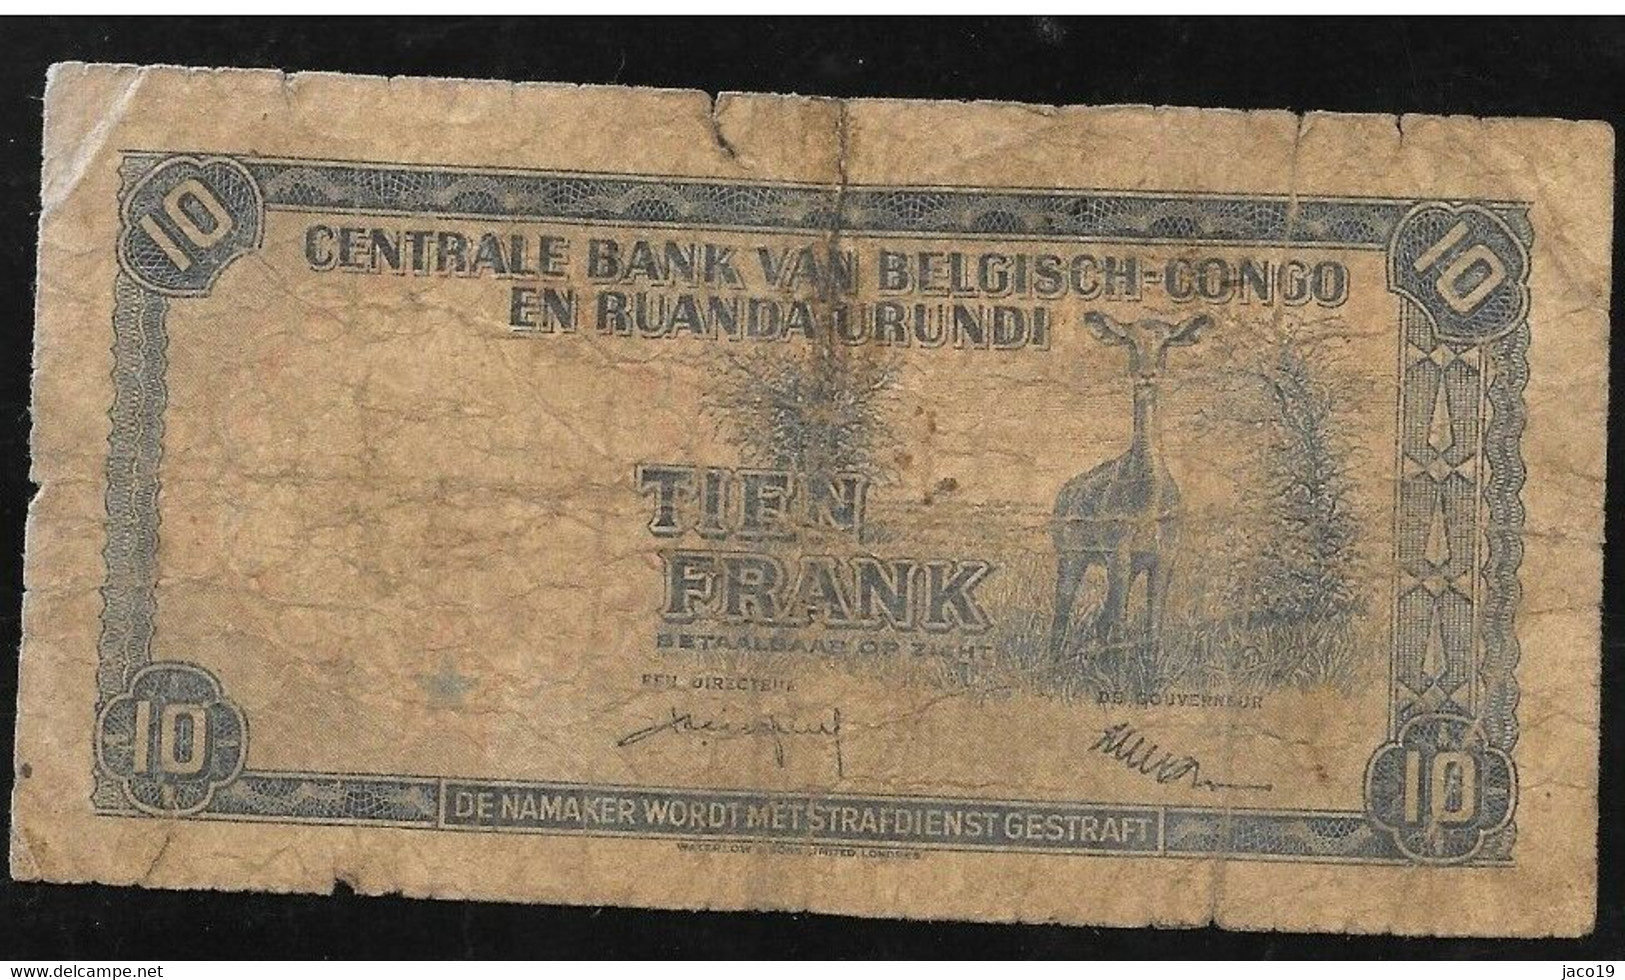 10 Francs -congo-belge Type "1955" 01-08-58 - Banque Du Congo Belge